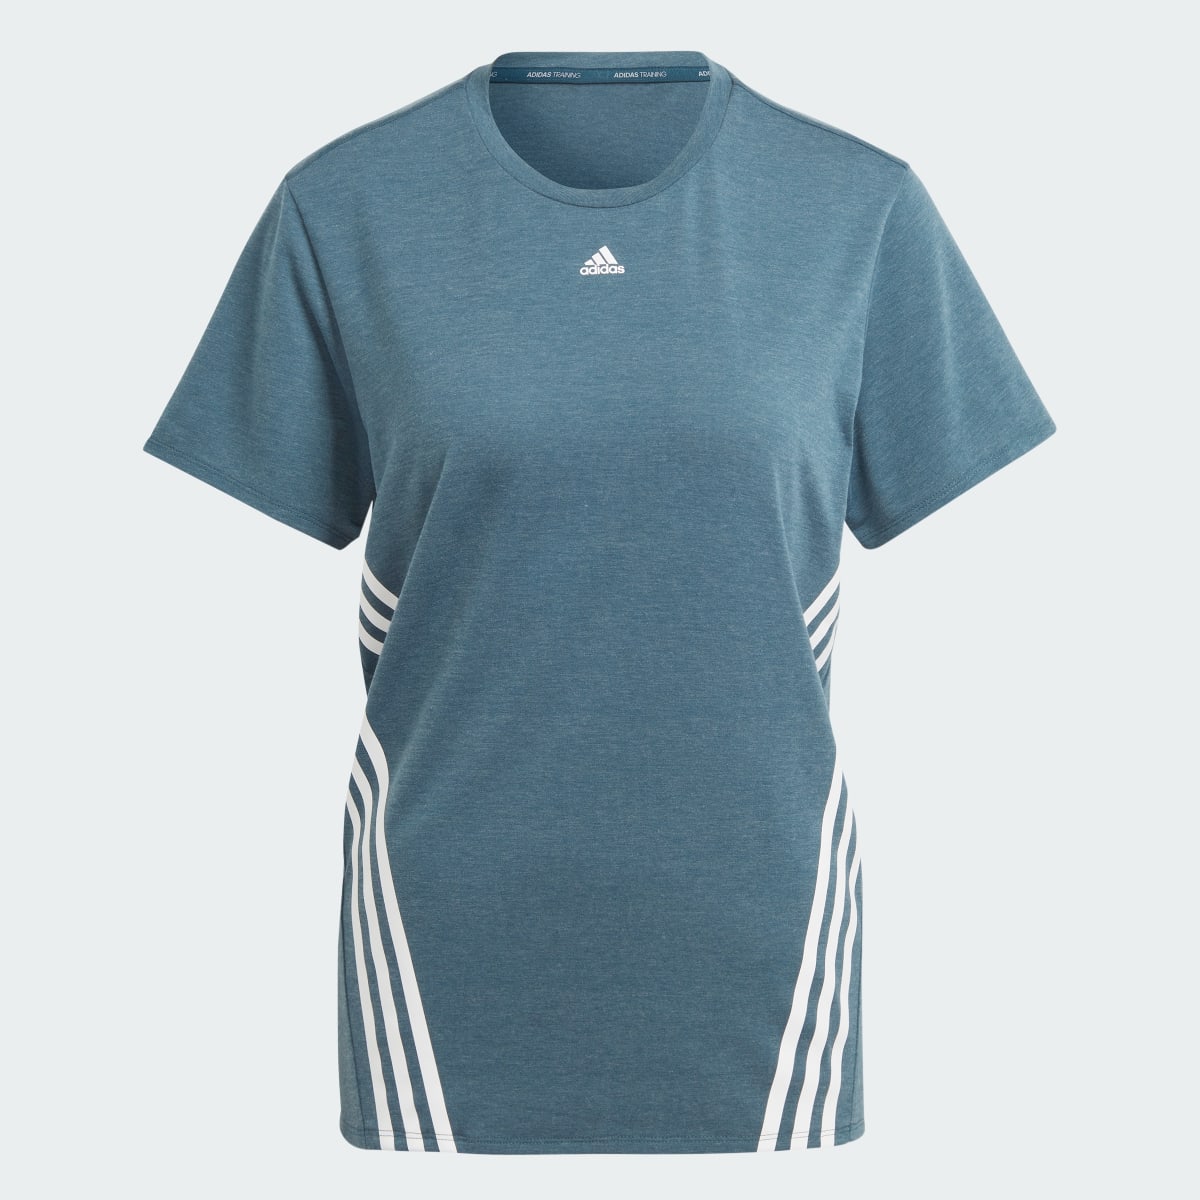 Adidas Train Icons 3-Stripes T-Shirt. 5